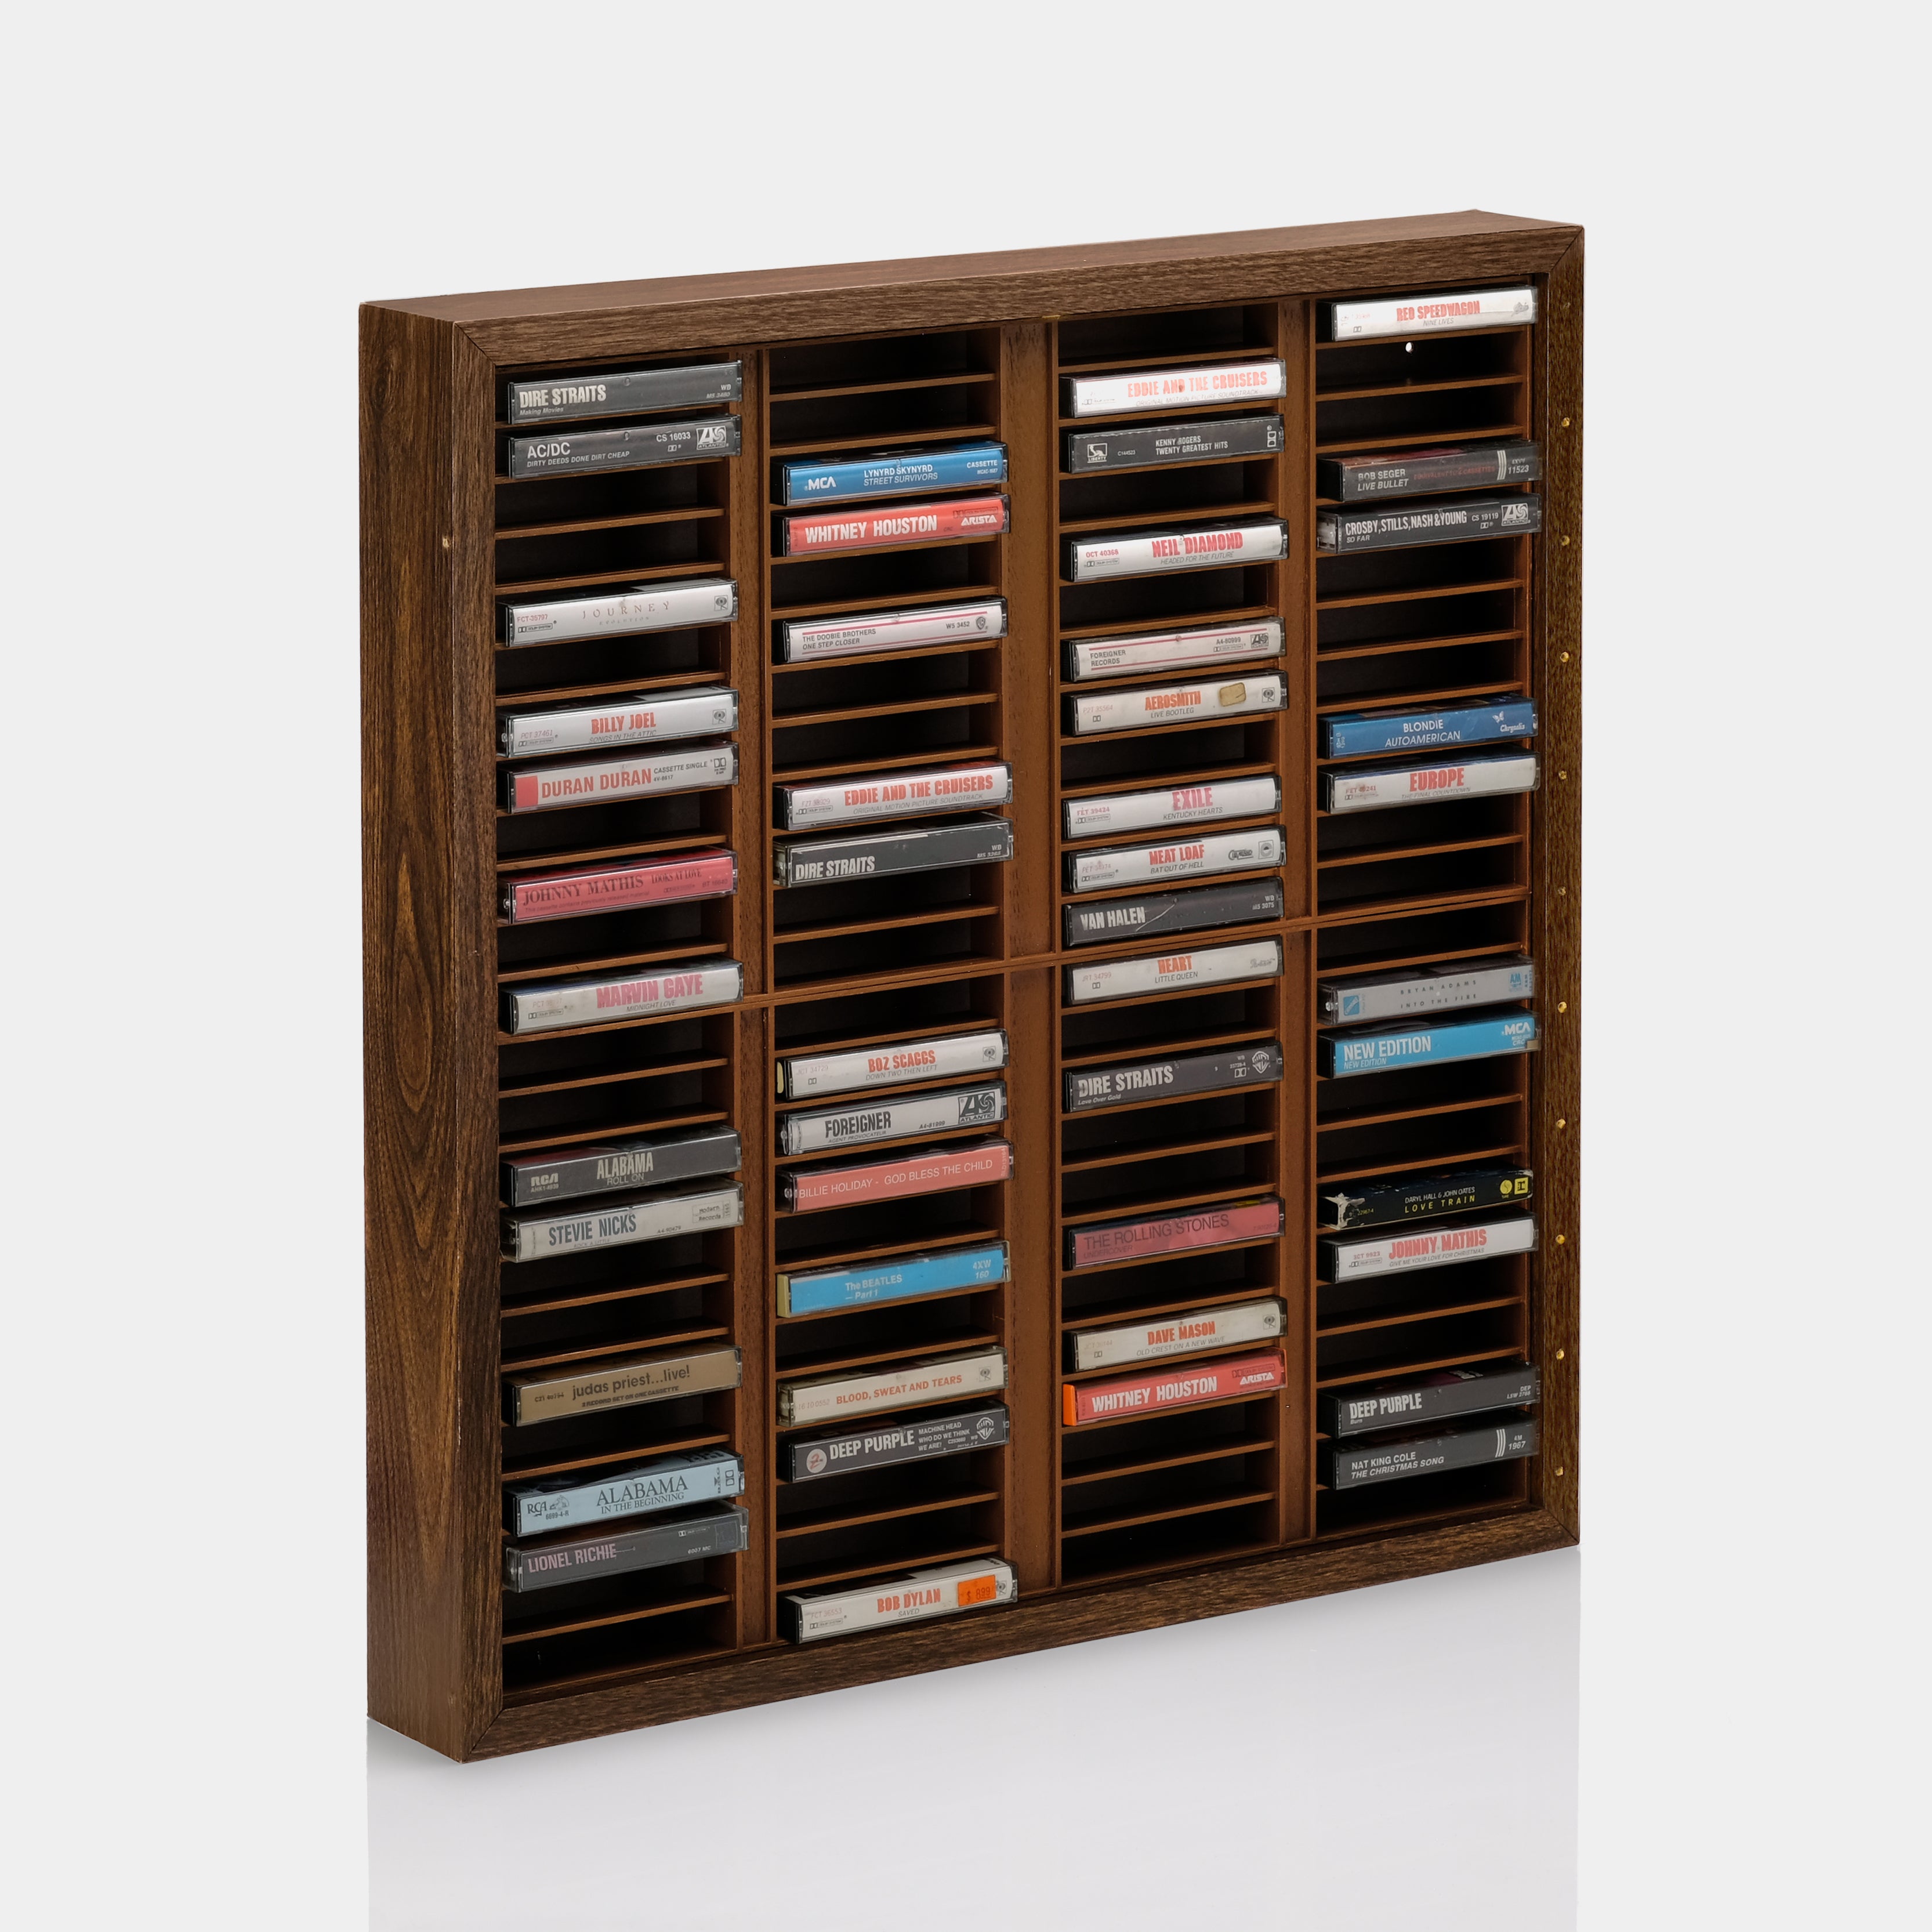 Wood Veneer Cassette Storage Shelf for 96 Cassettes